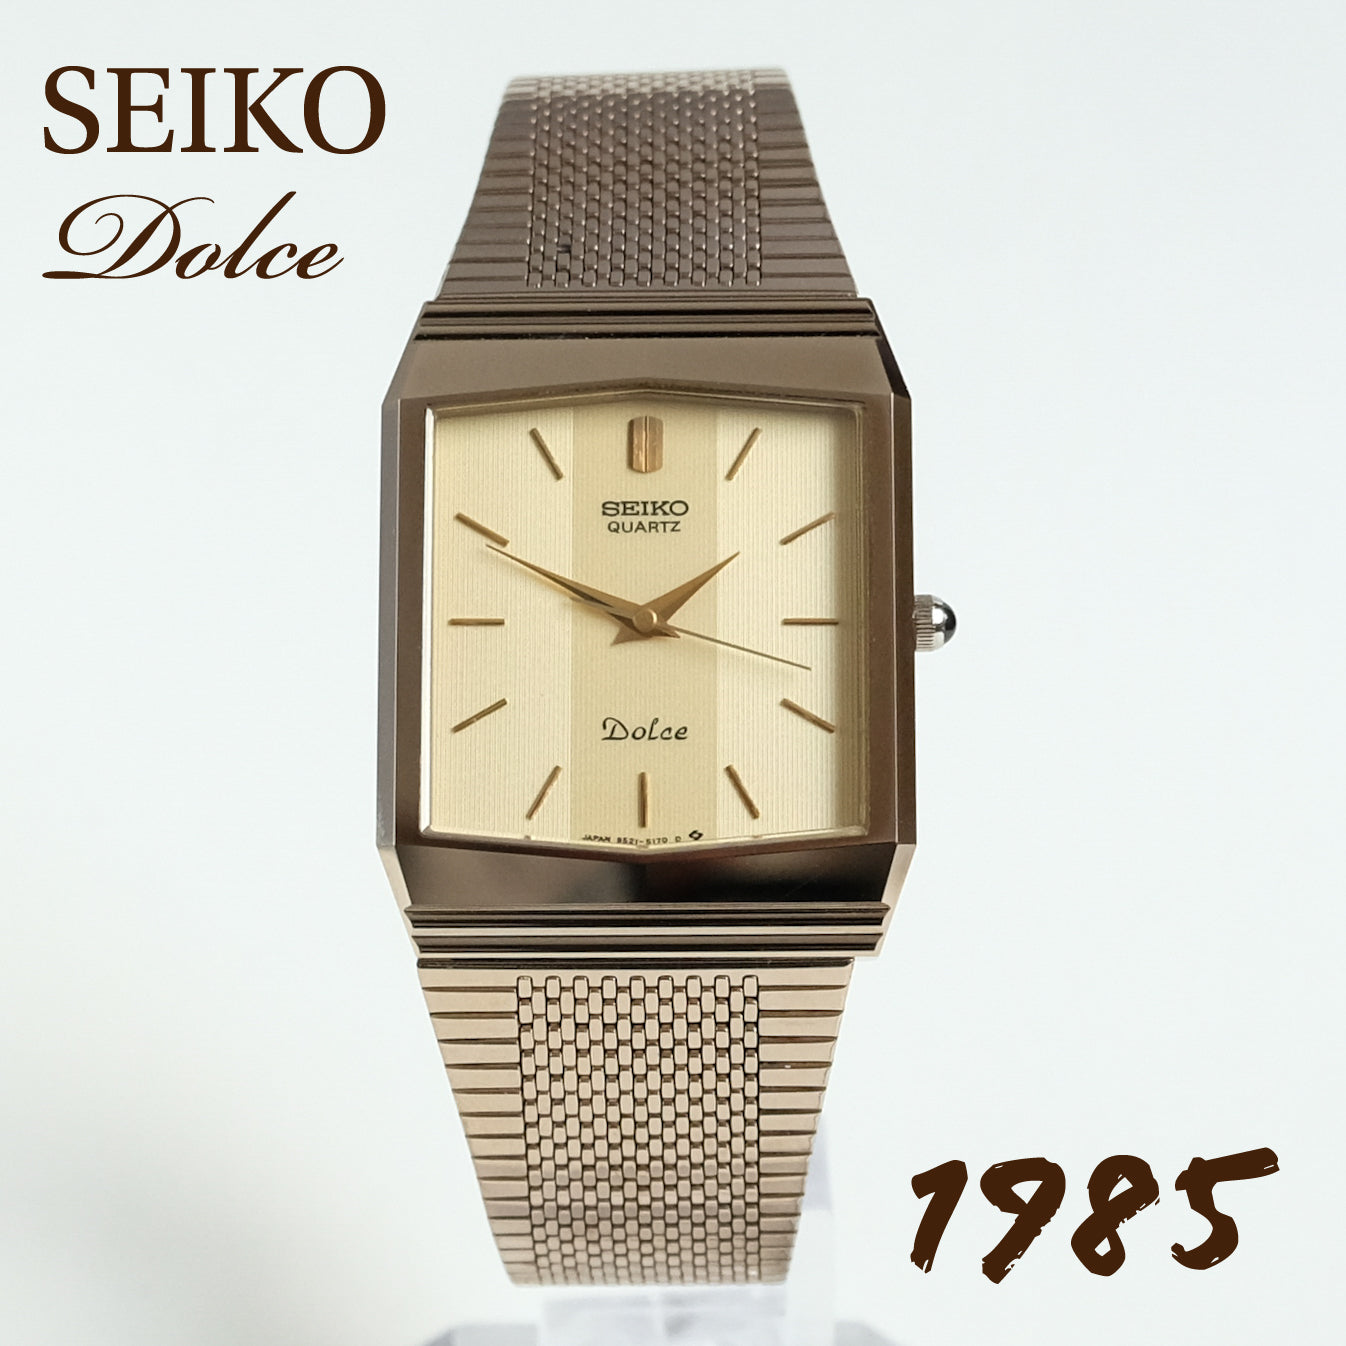 1985 Seiko Dolce 9521-5170